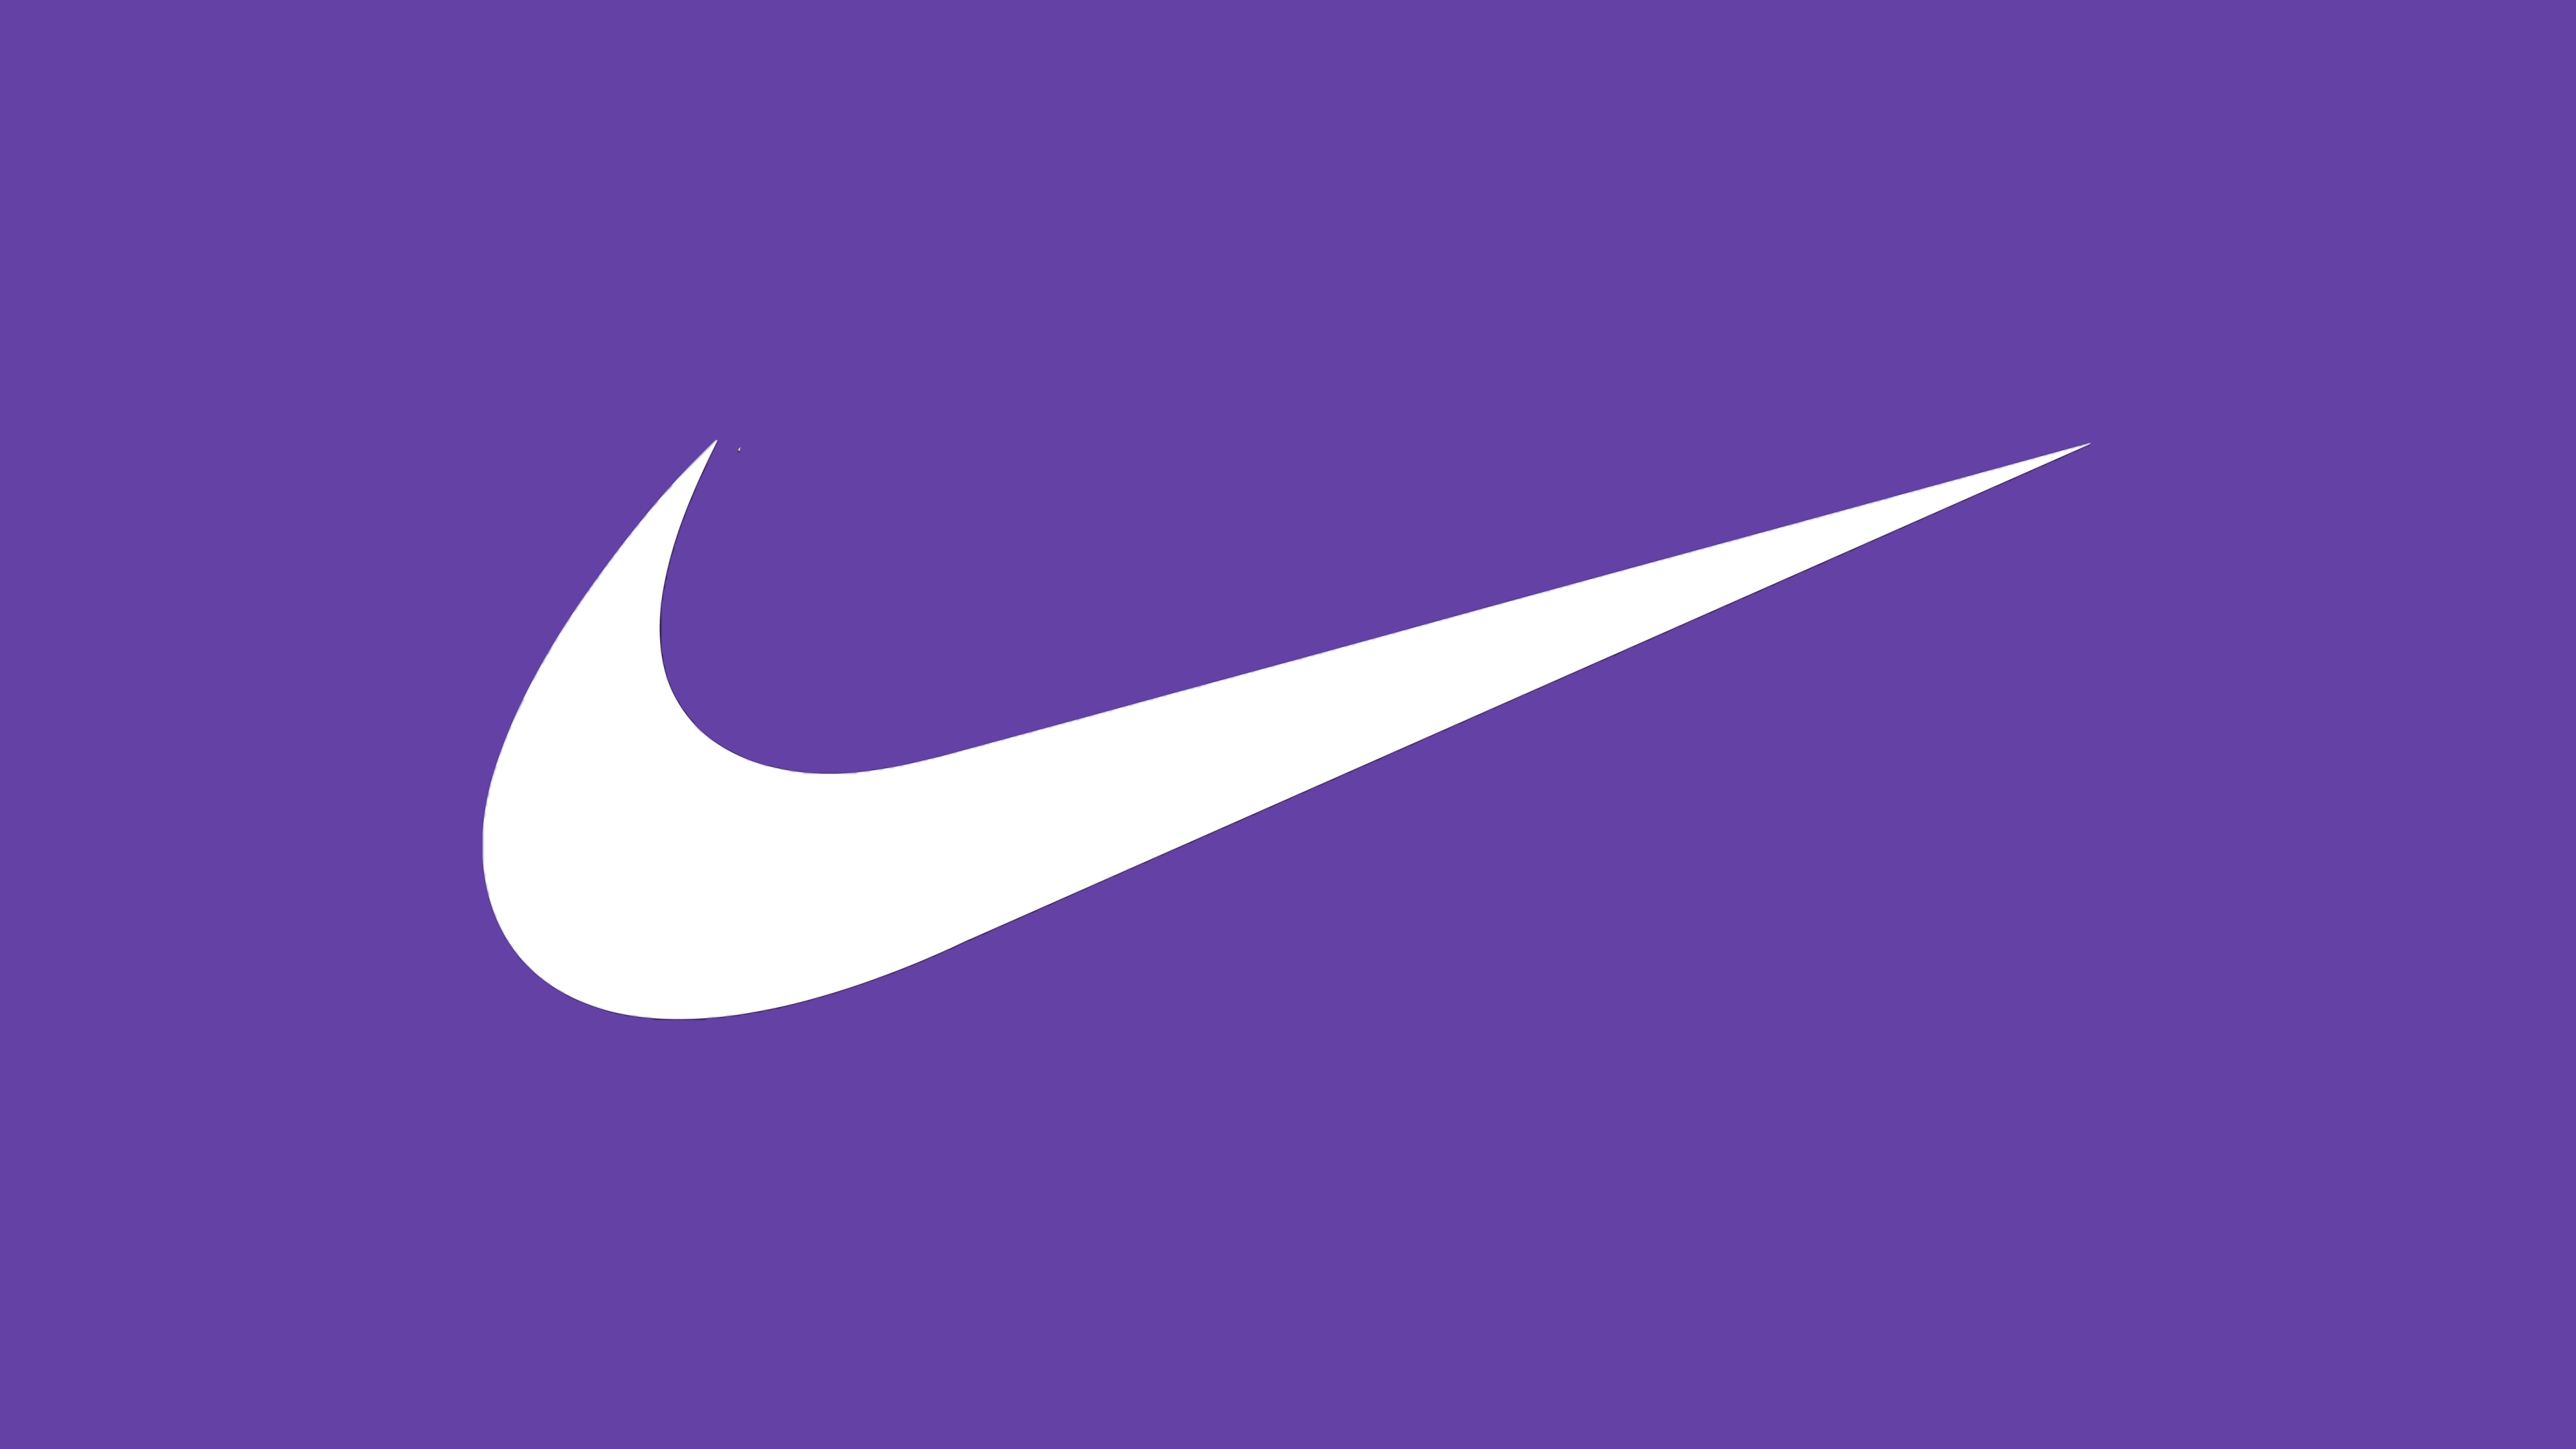 HD wallpaper, Simple, Purple Background, 5K, 8K, Nike